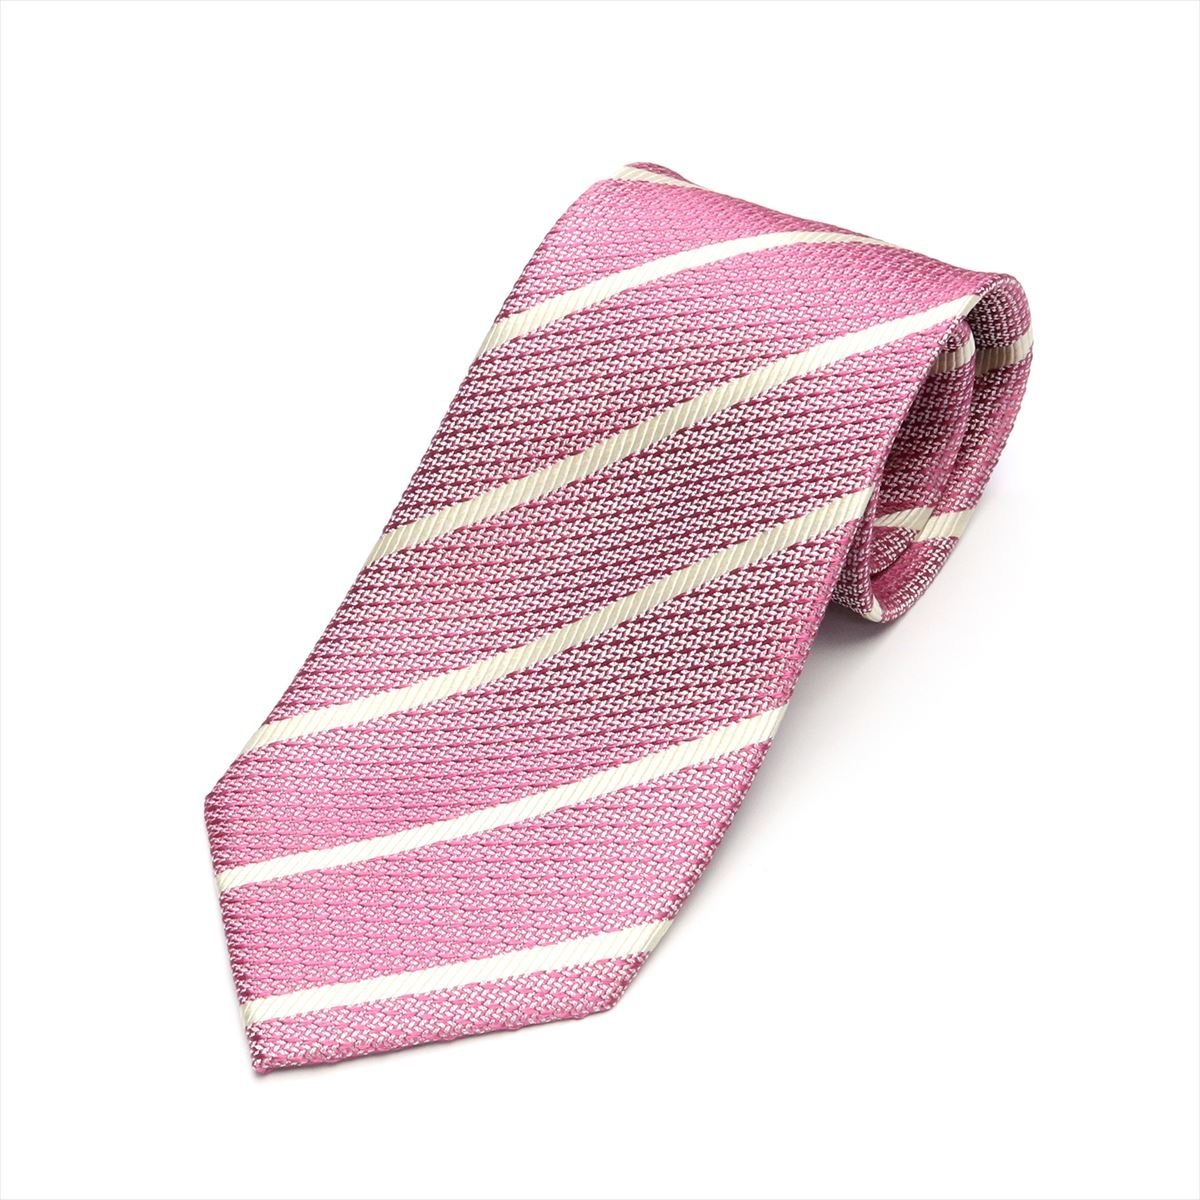 TOKYO SHIRTS（トーキョーシャツ）ネクタイ 絹100% ガルザタイ ピンク ビジネス フォーマル BM15I101GCAS3SA-80-930軽やかな手触りと明るい色使いが新しい季節にぴったりの、フレッシュな印象のネクタイ。色柄も...